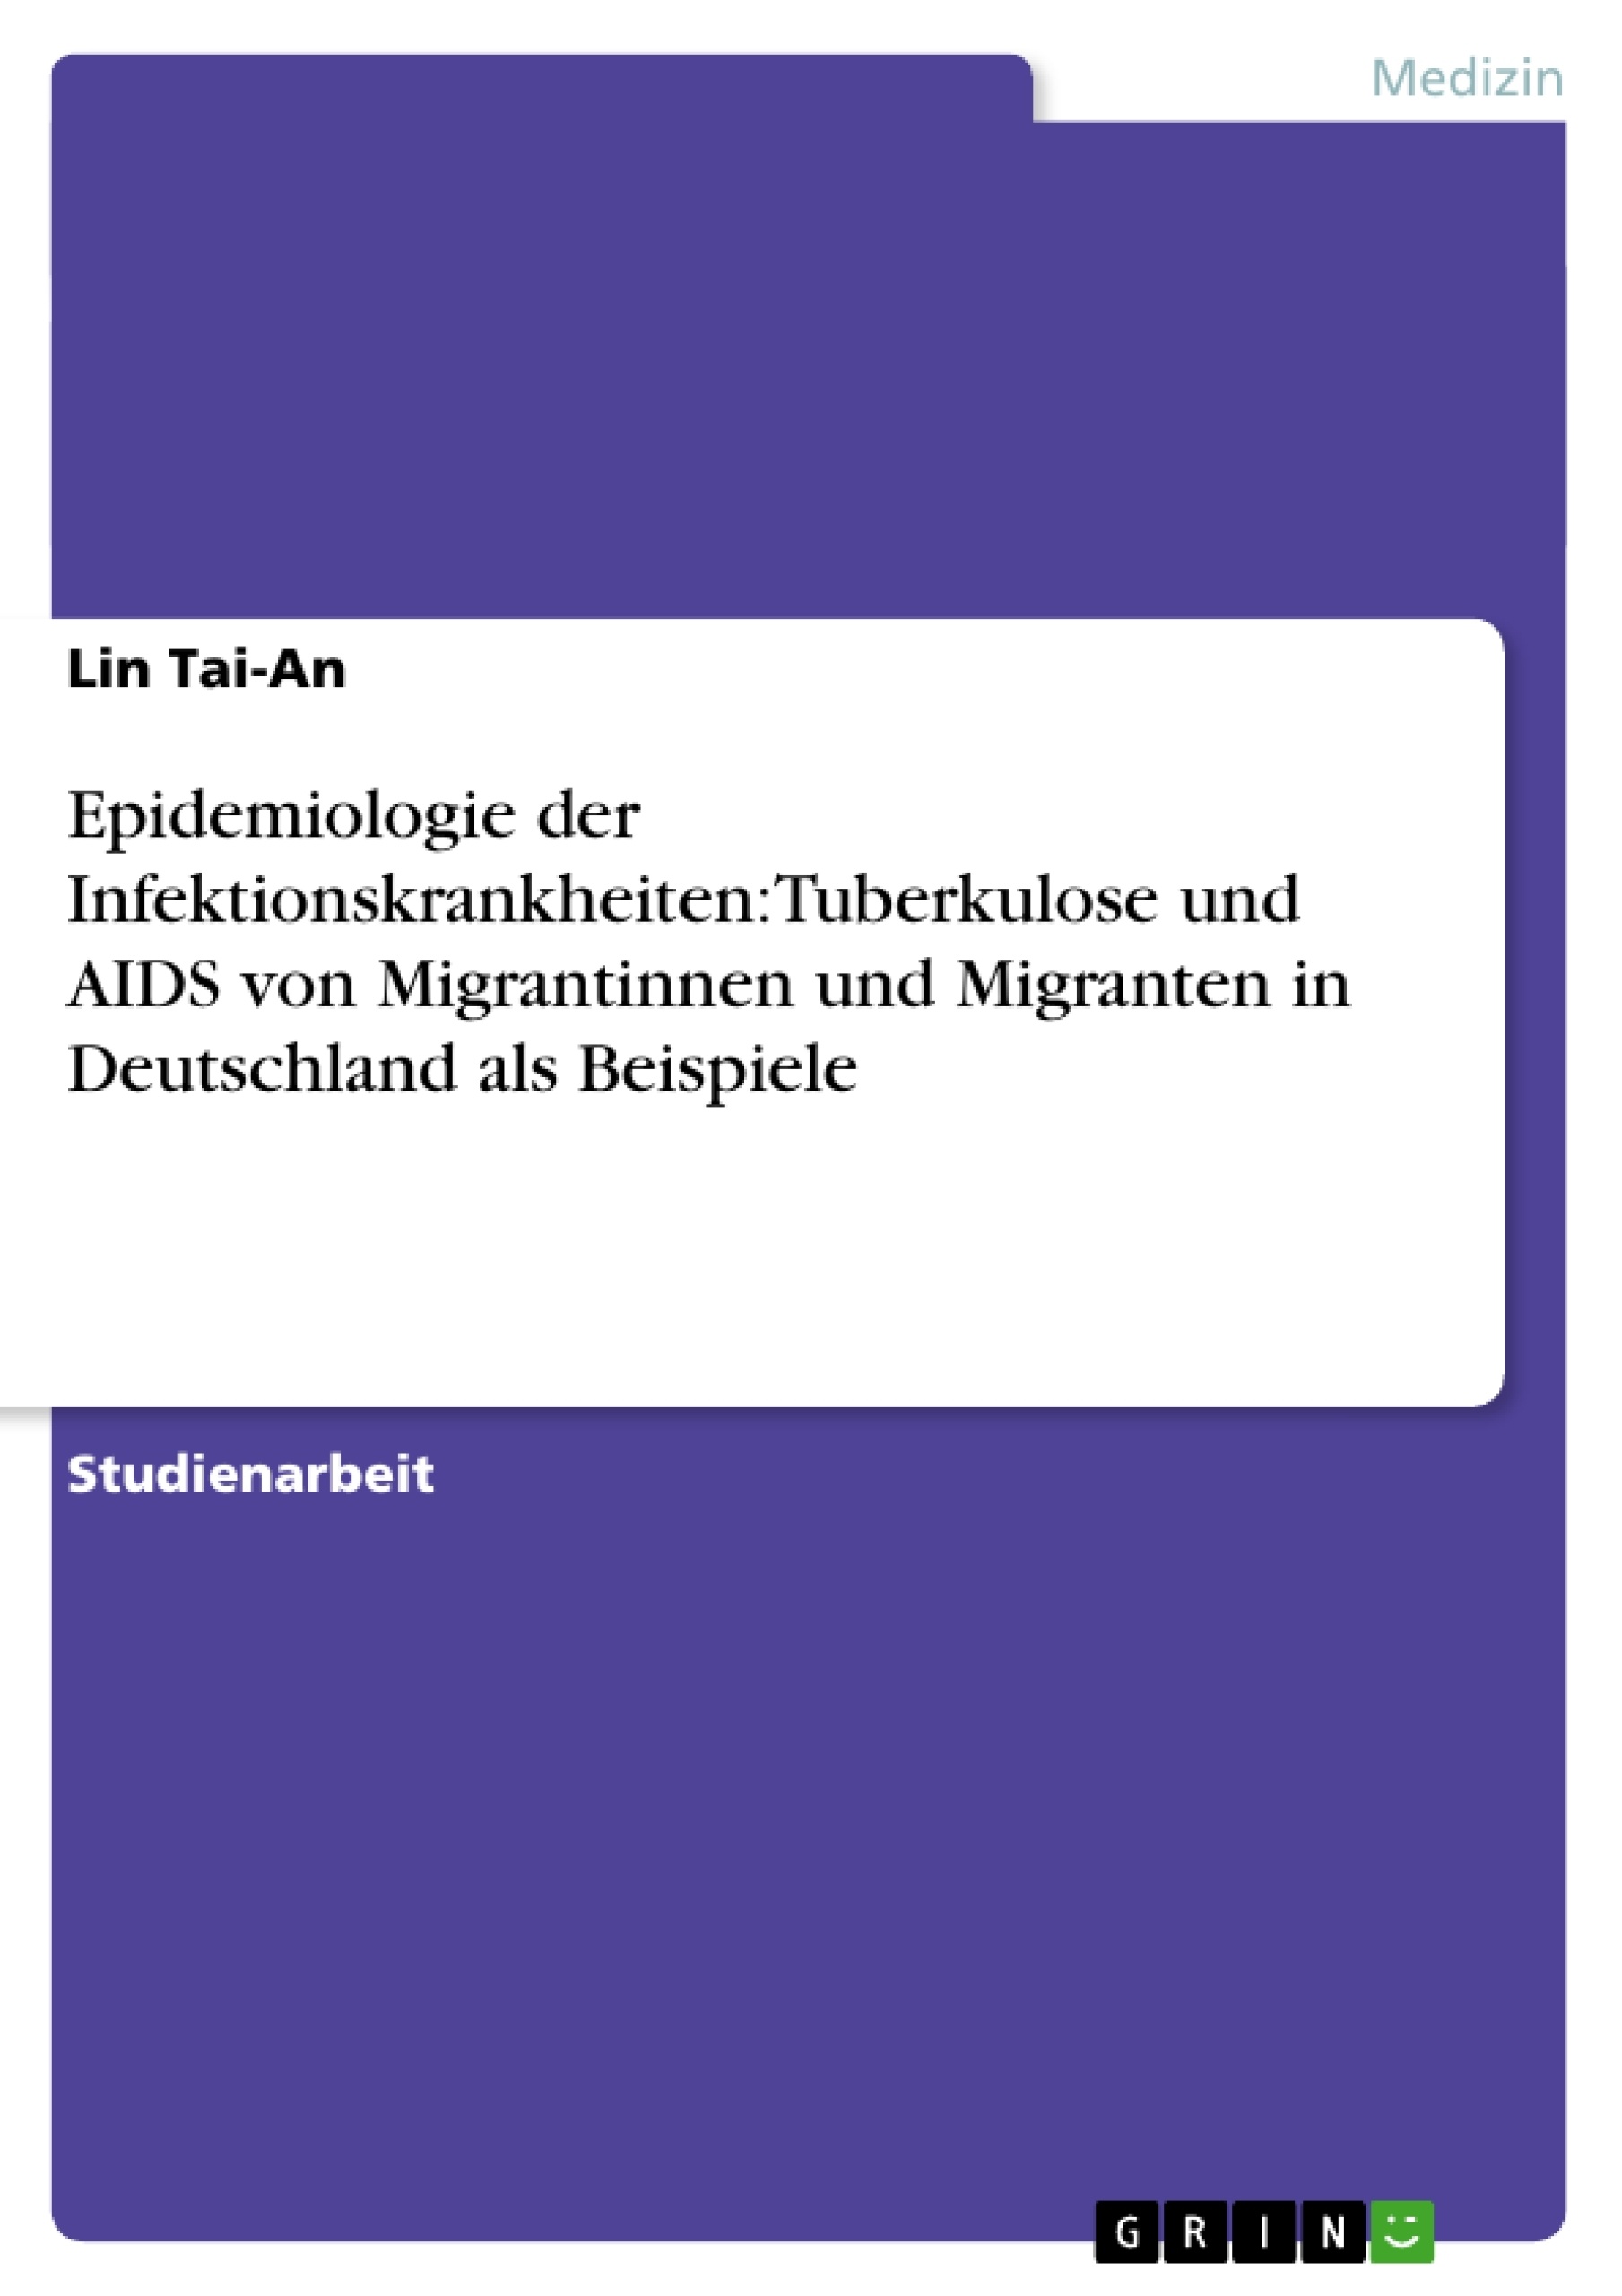 Título: Epidemiologie der Infektionskrankheiten:Tuberkulose und AIDS von Migrantinnen und Migranten in Deutschland als Beispiele